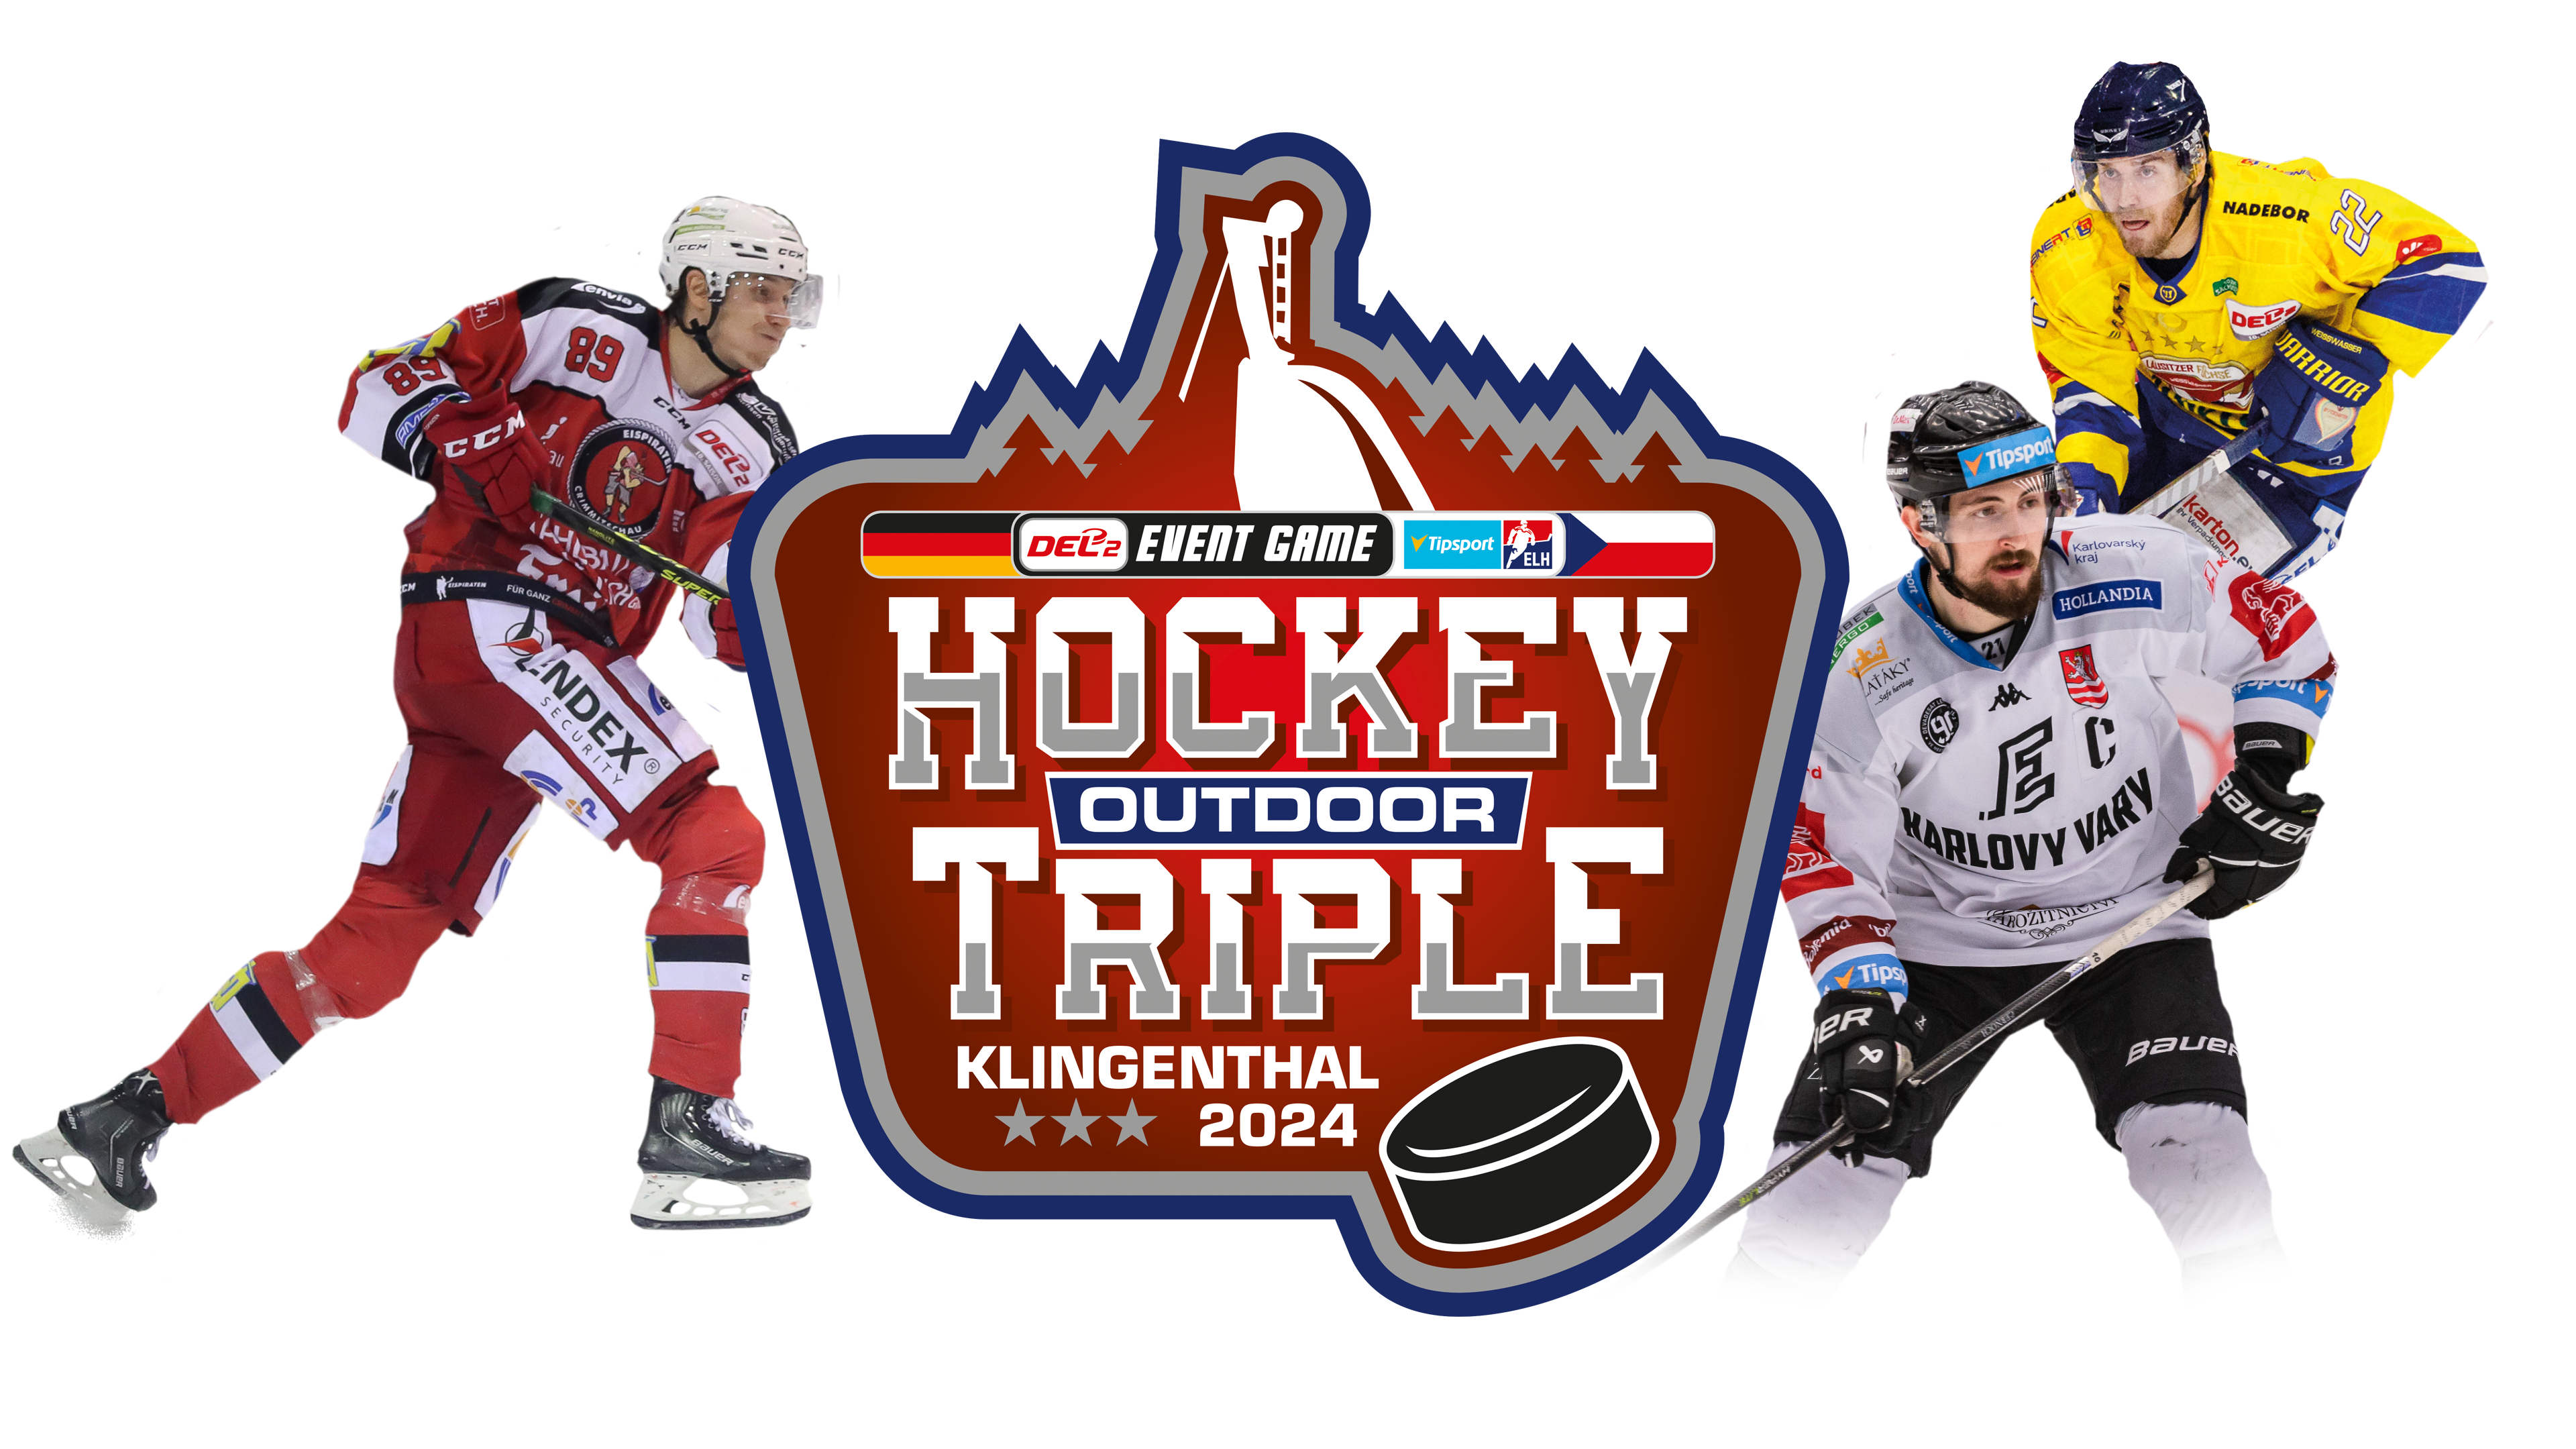 Eishockey Outdoor Triple Jubiläumsevent 2024 am Fuße der Skisprungschanze Klingenthal